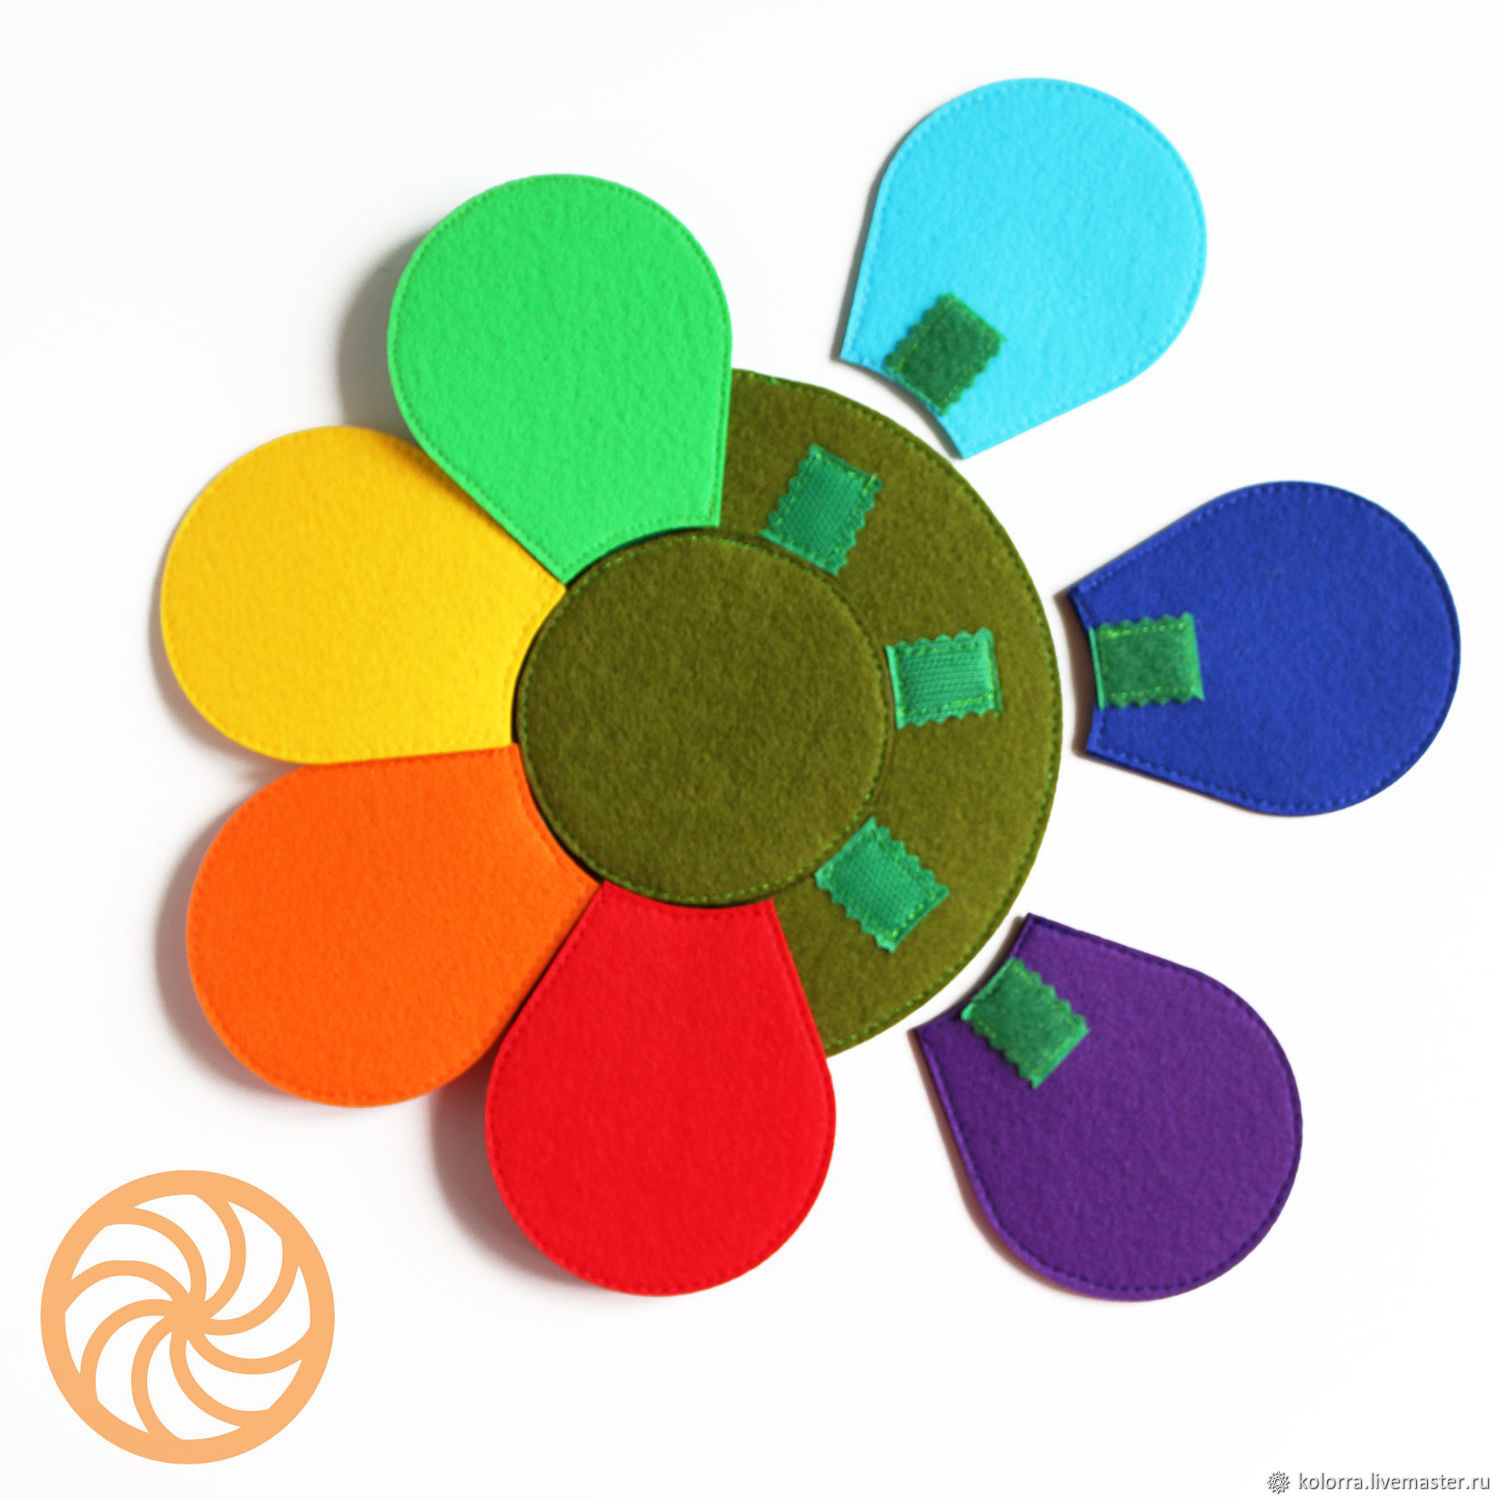 Цветик-семицветик для детского сада I Процесс создания цветка из сказки в студии Olneva Decor